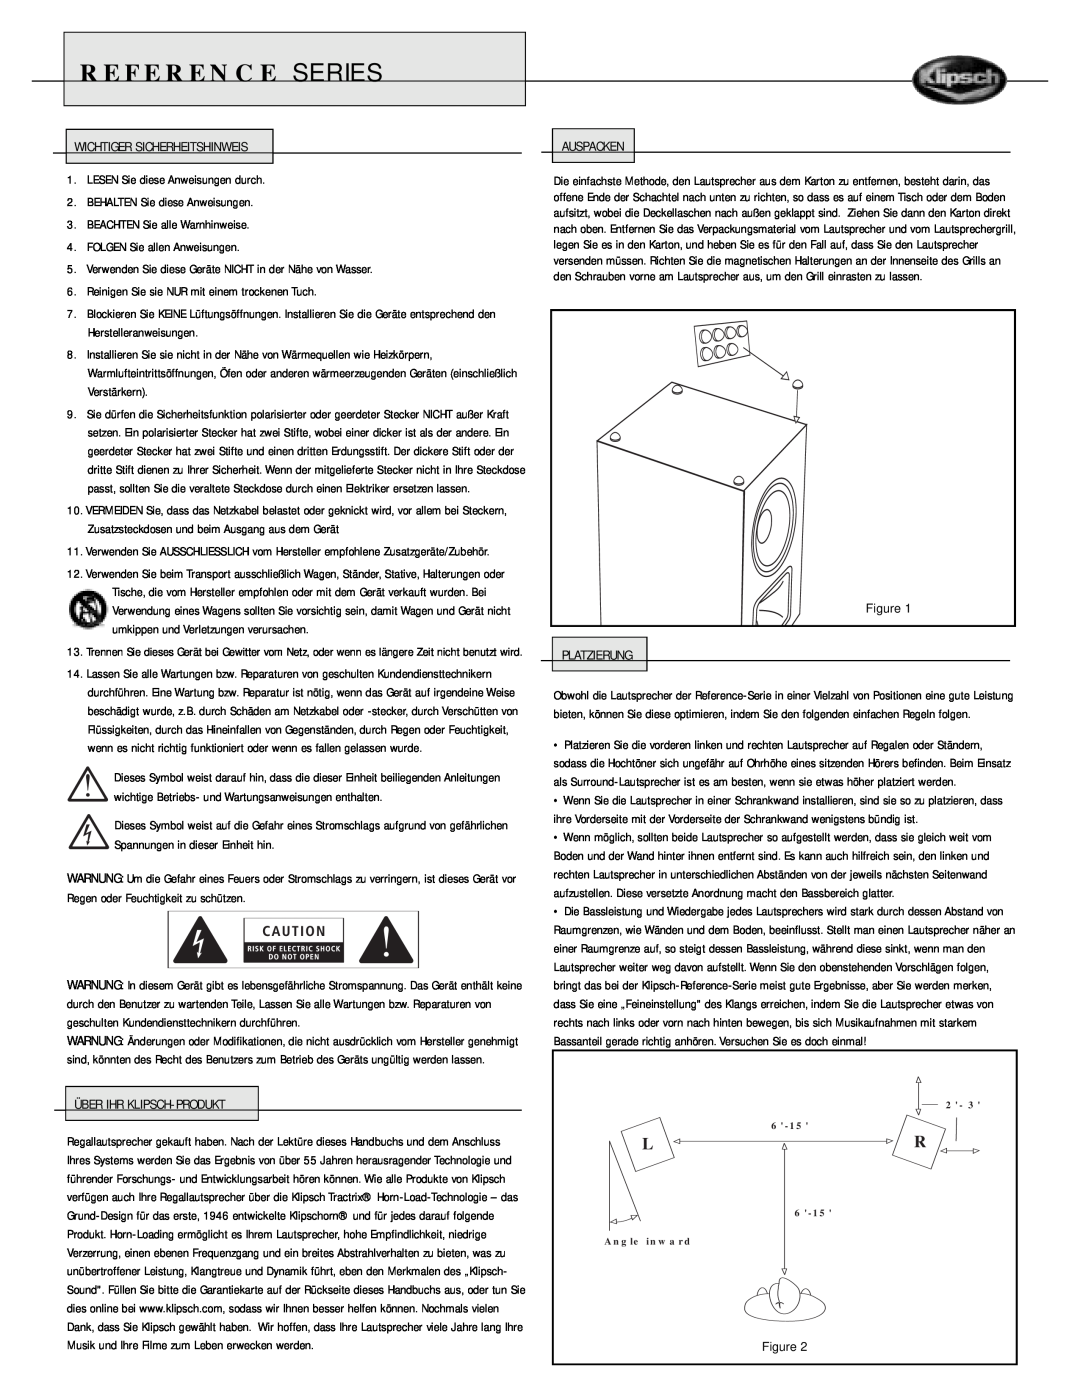 Klipsch Speaker owner manual Reference Series, Wichtiger Sicherheitshinweis 